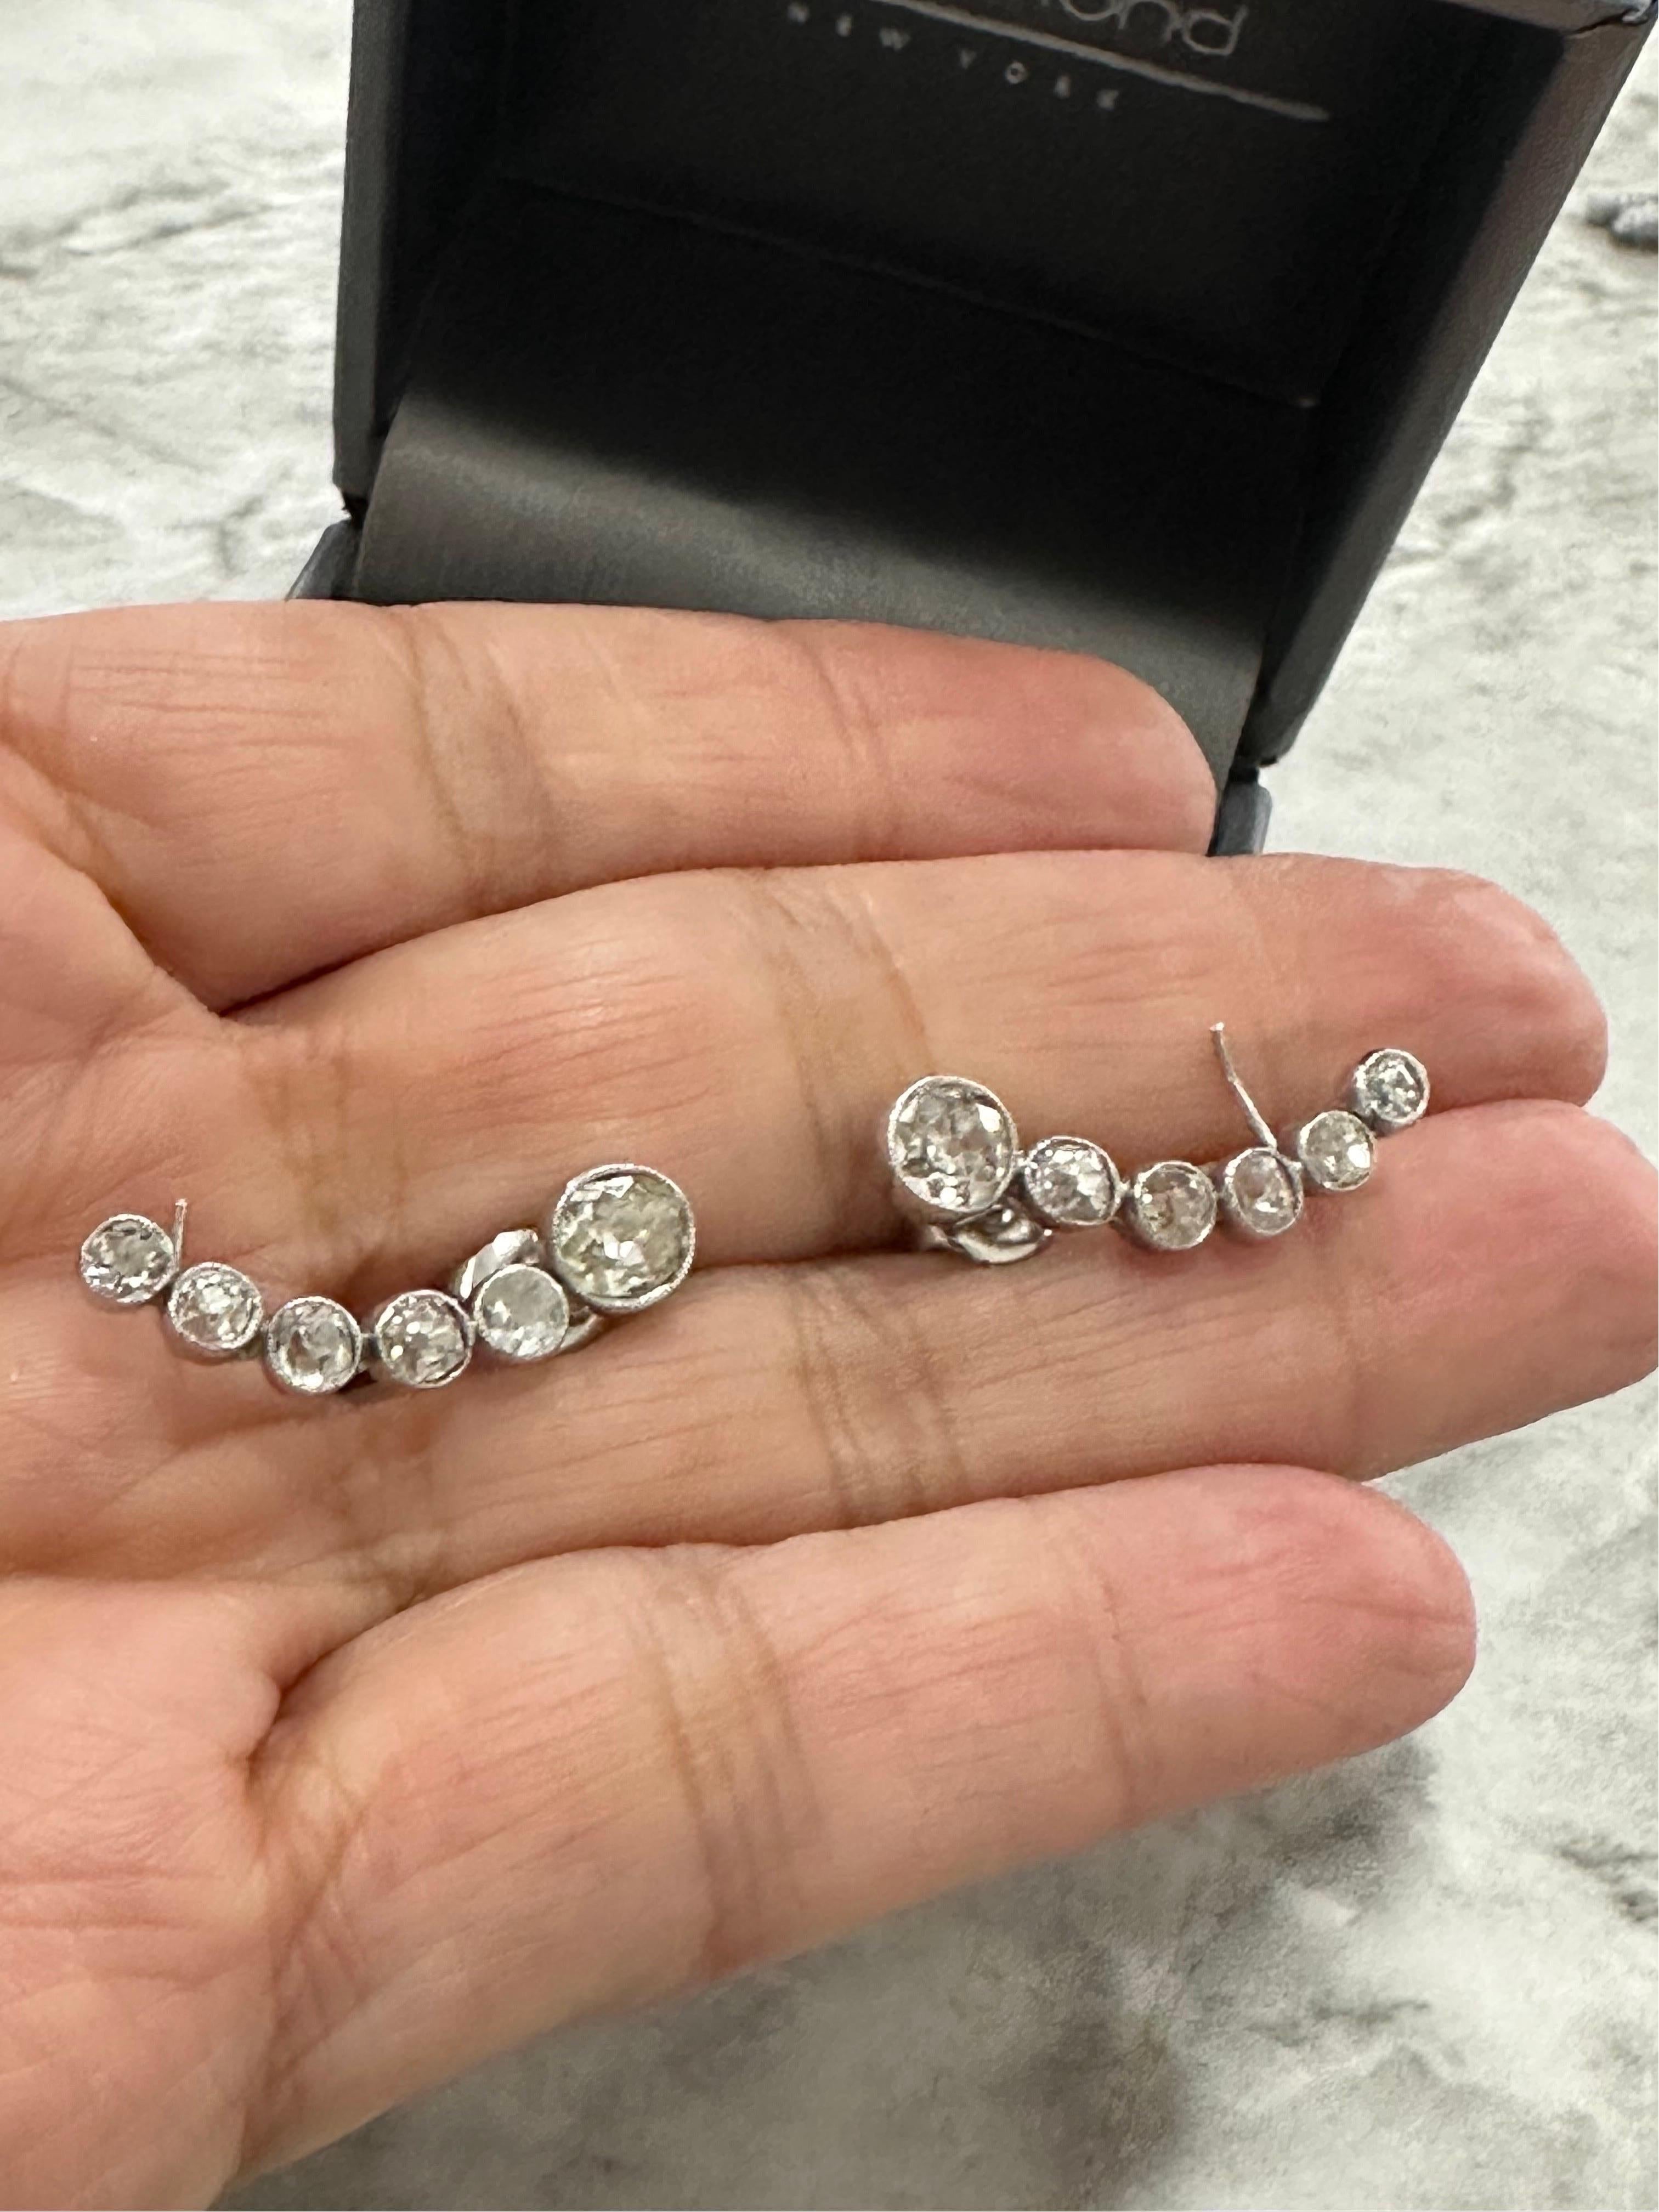 Les manchettes d'oreilles en diamants anciens sertis sur lunette sont tout à fait dans l'air du temps !
Environ 2,40 carats de diamants
F-J Couleur
VS2-I1
Original Art Deco redessiné pour un usage contemporain.